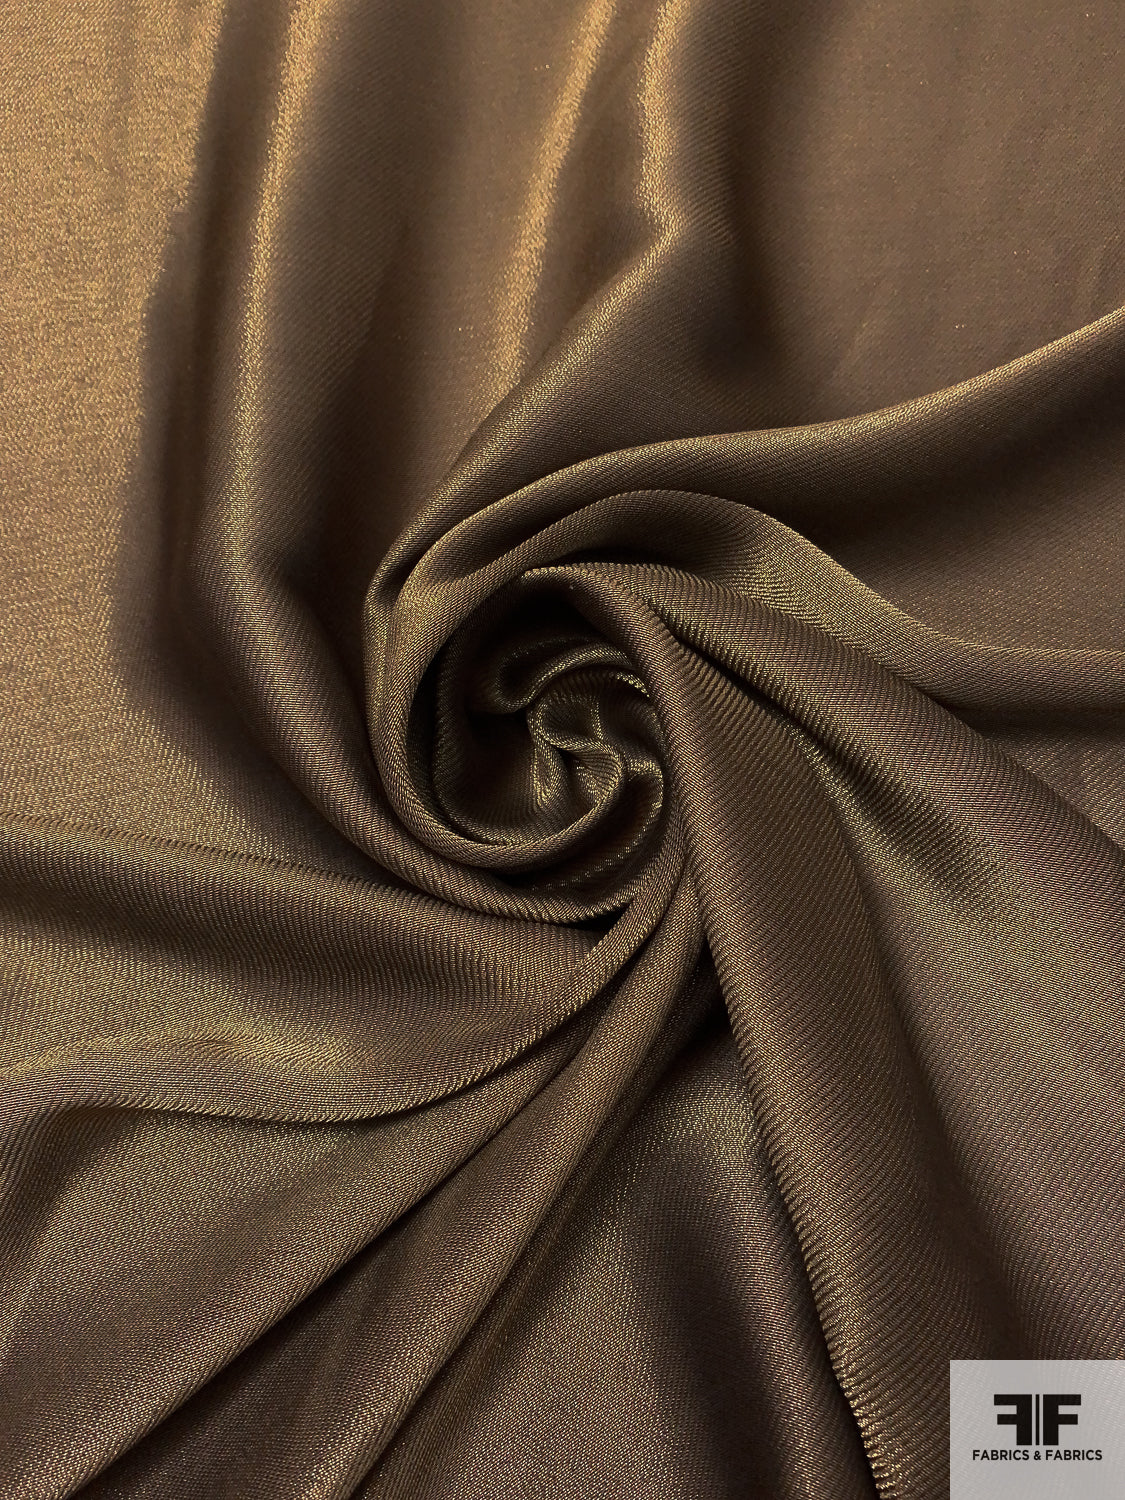 Italian Ralph Lauren Twill-Weave Soft Silk Lamé - Brown / Gold